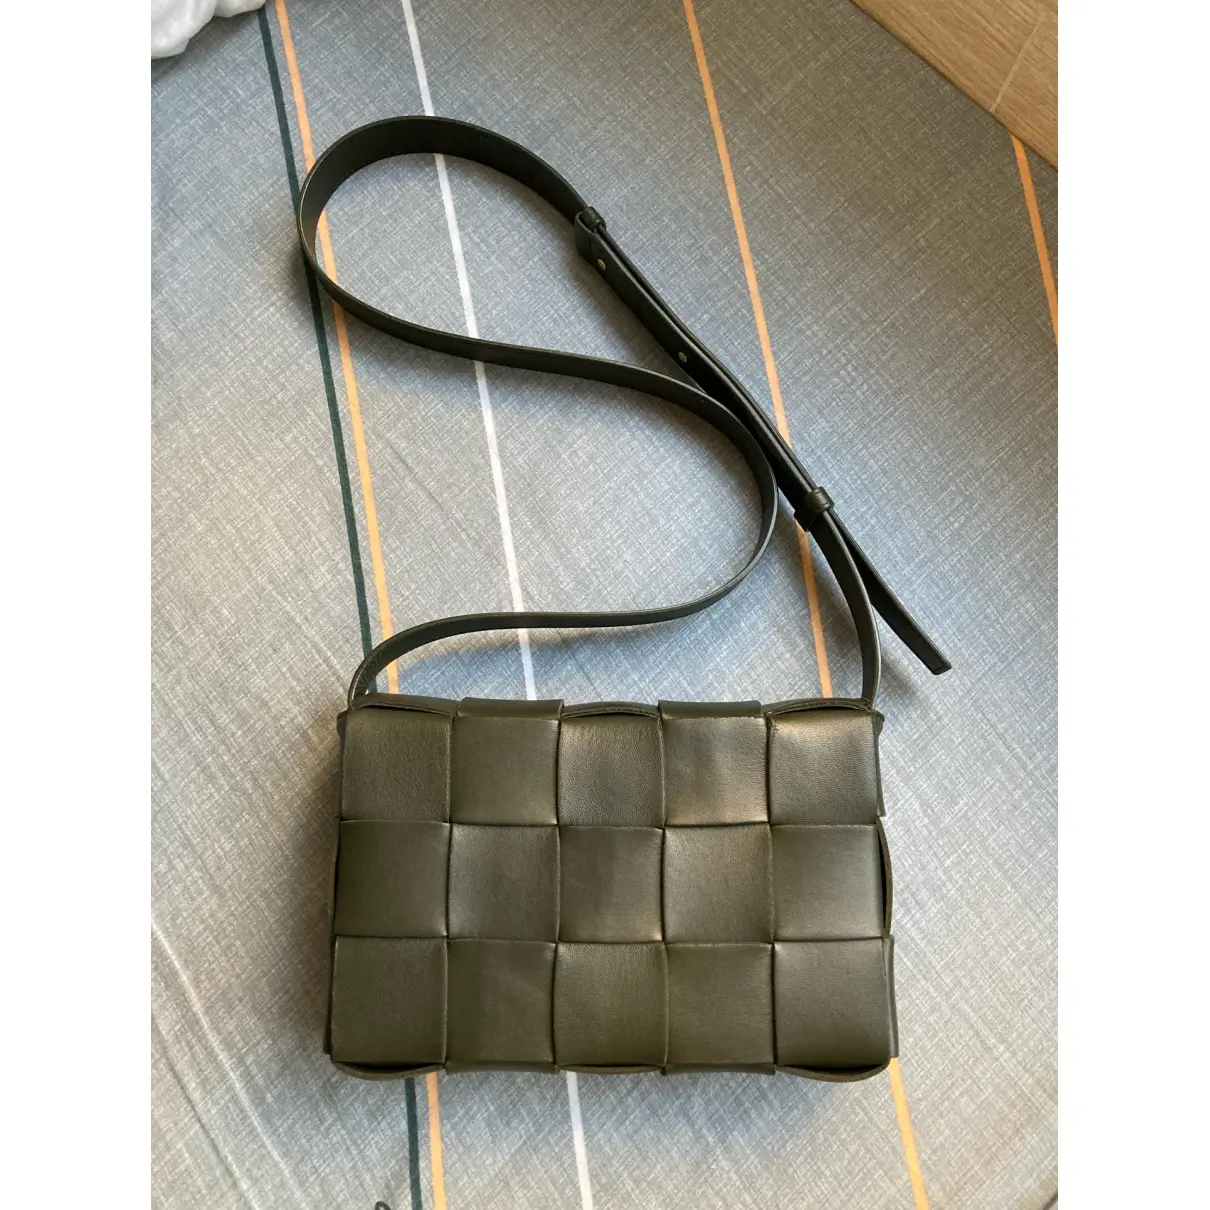 Buy Bottega Veneta Cassette leather handbag online